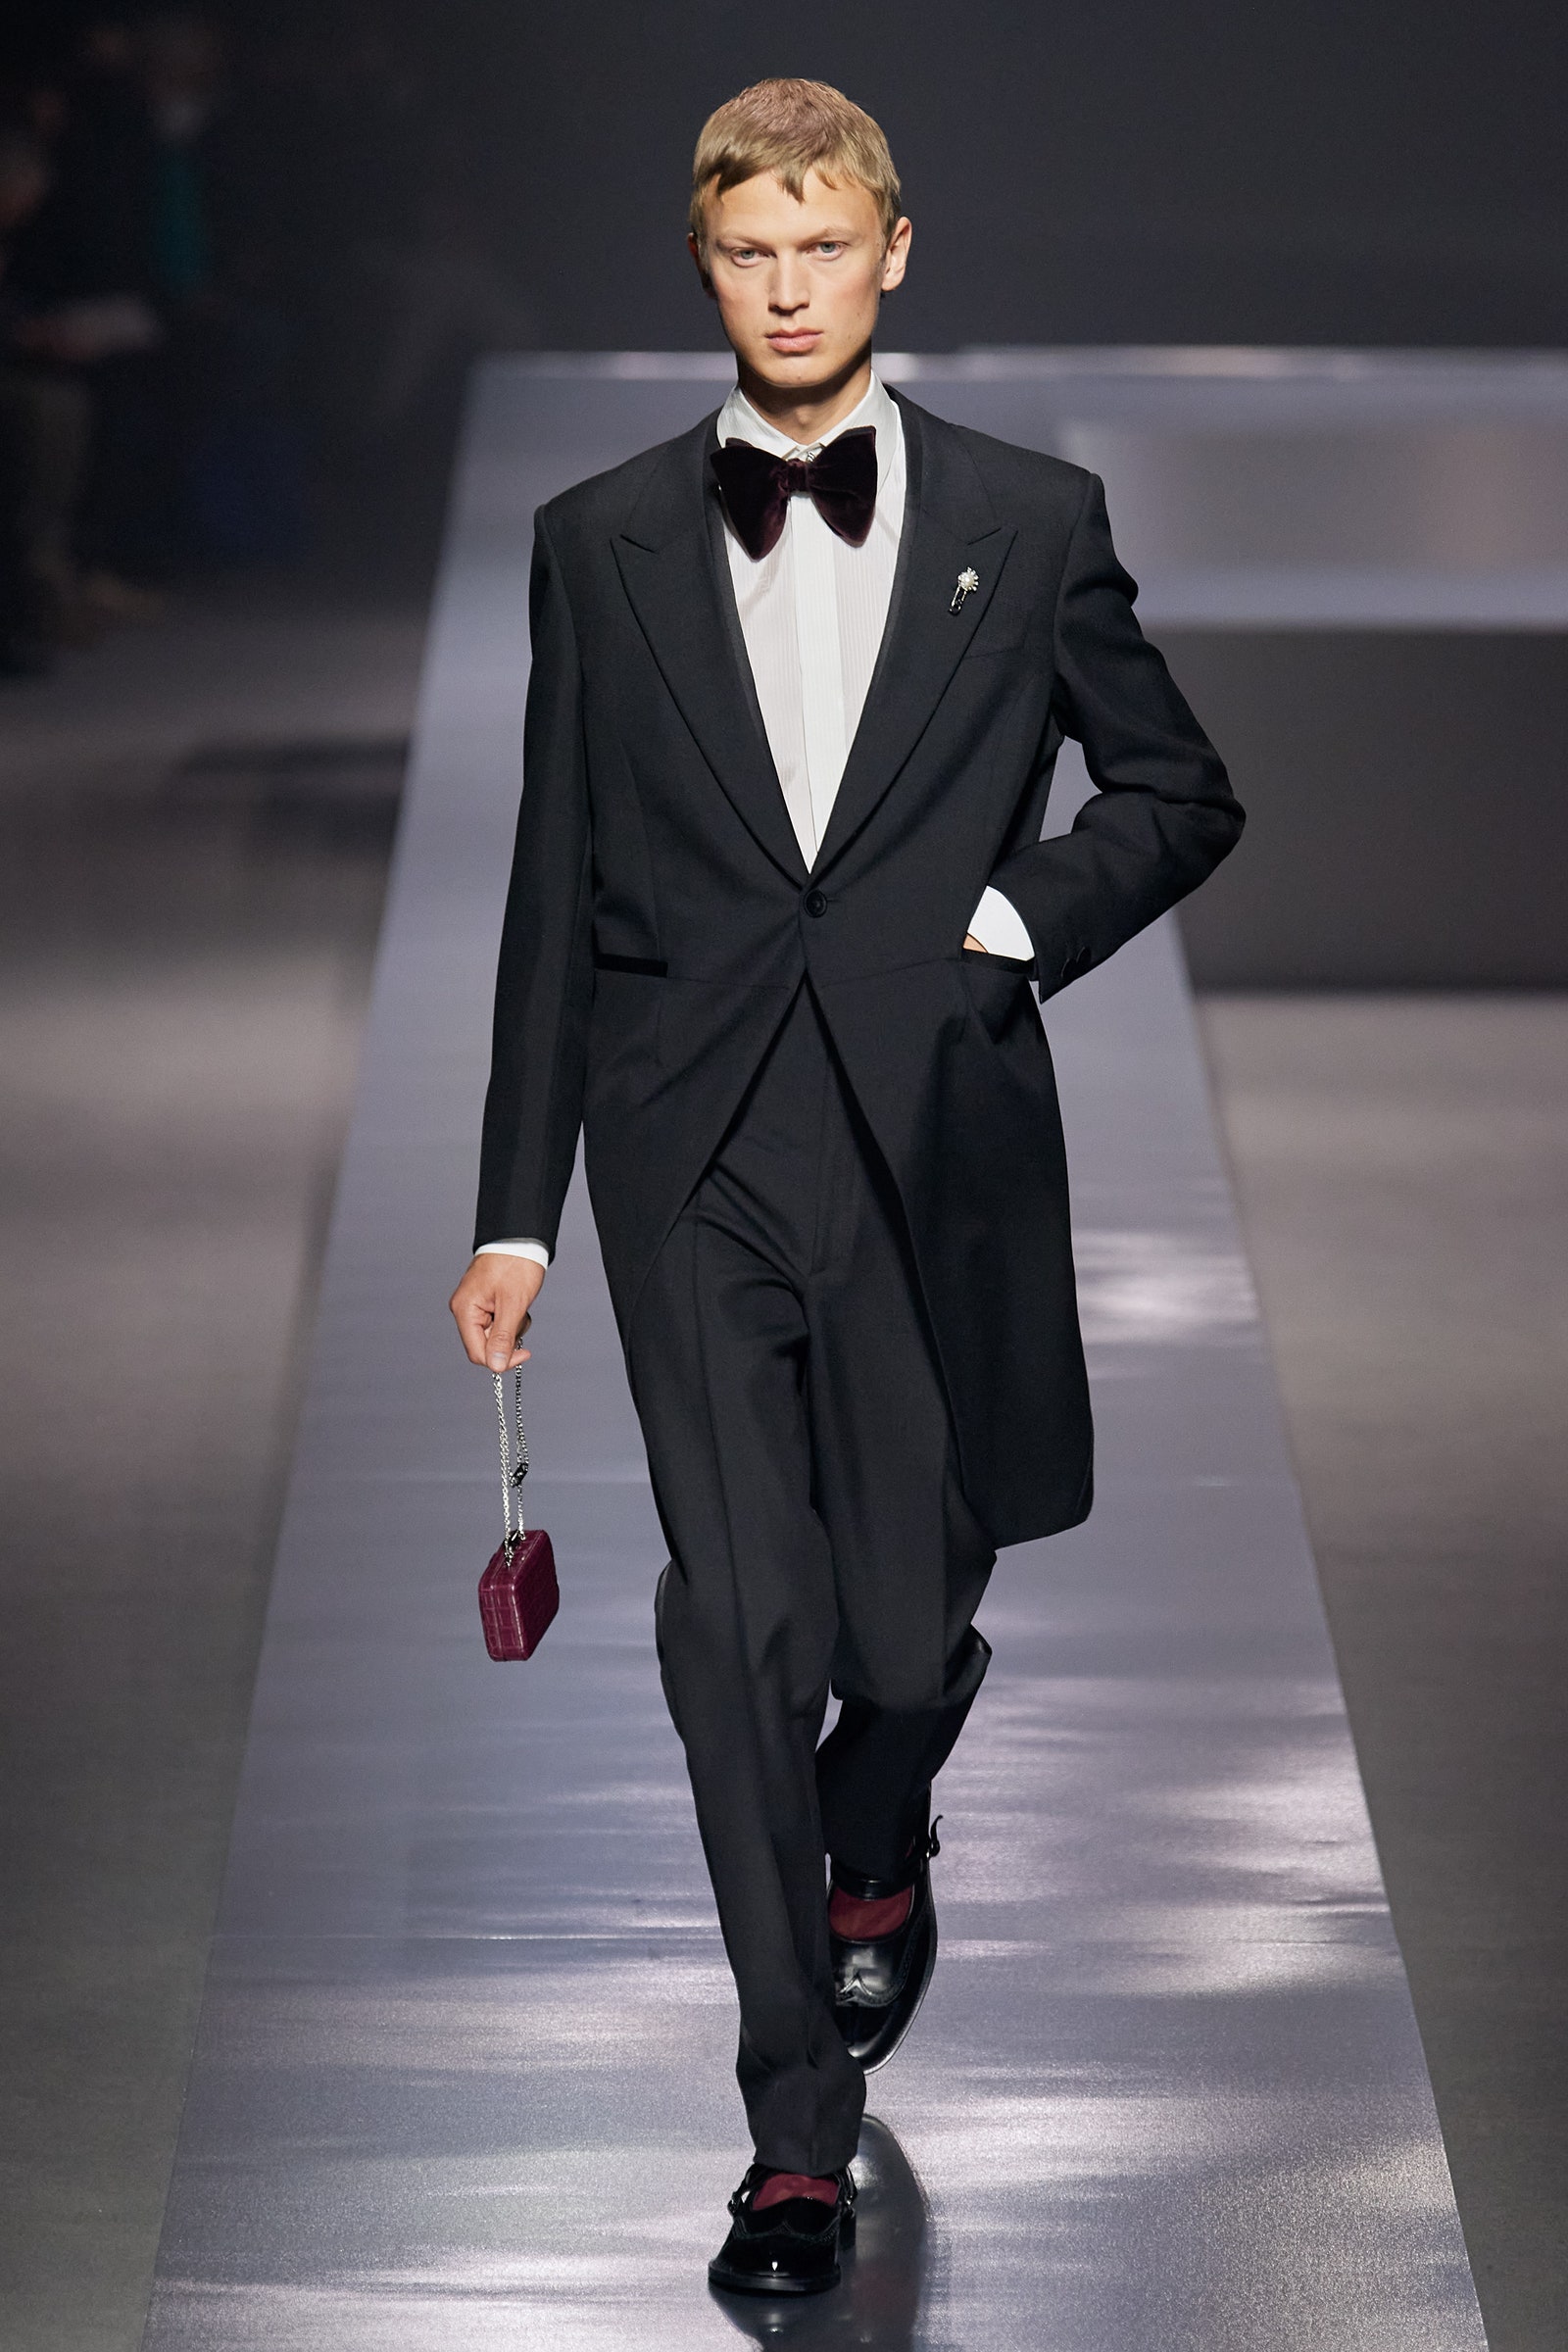 Знаменитости на подиуме и другие яркие моменты Недели мужской моды в Милане